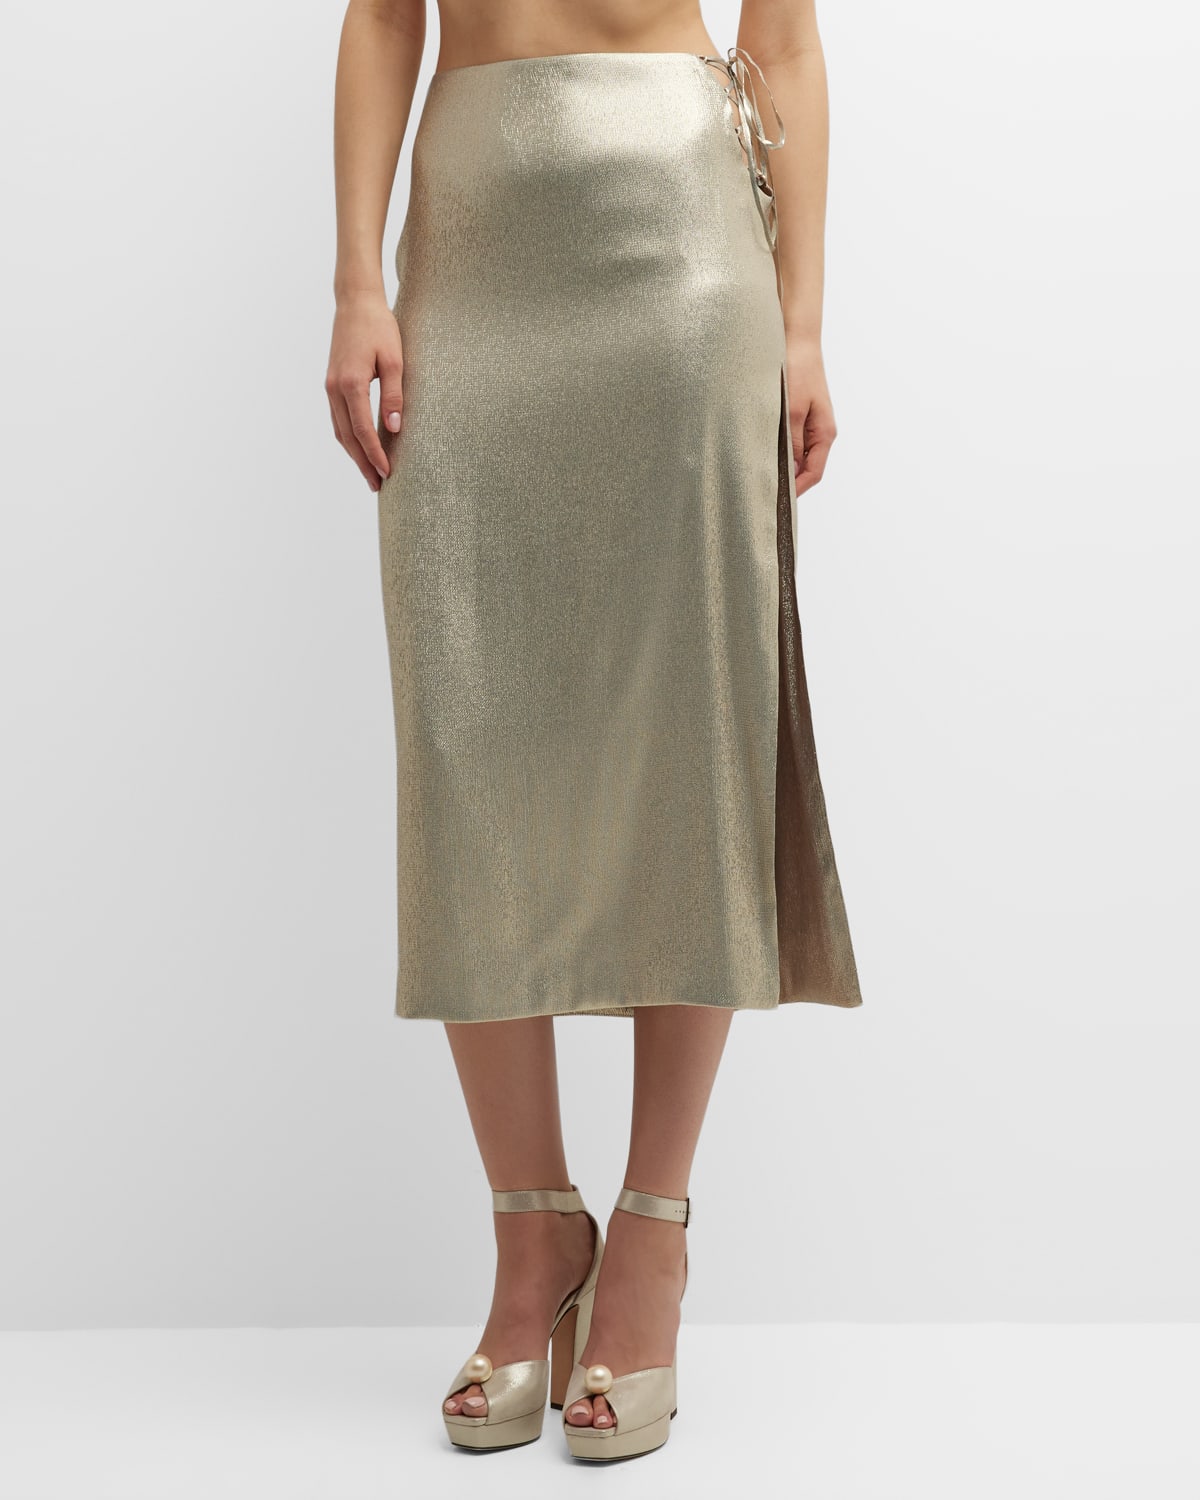 Adriana Iglesias Ale Metallic Lace-Up Side-Slit Midi Skirt